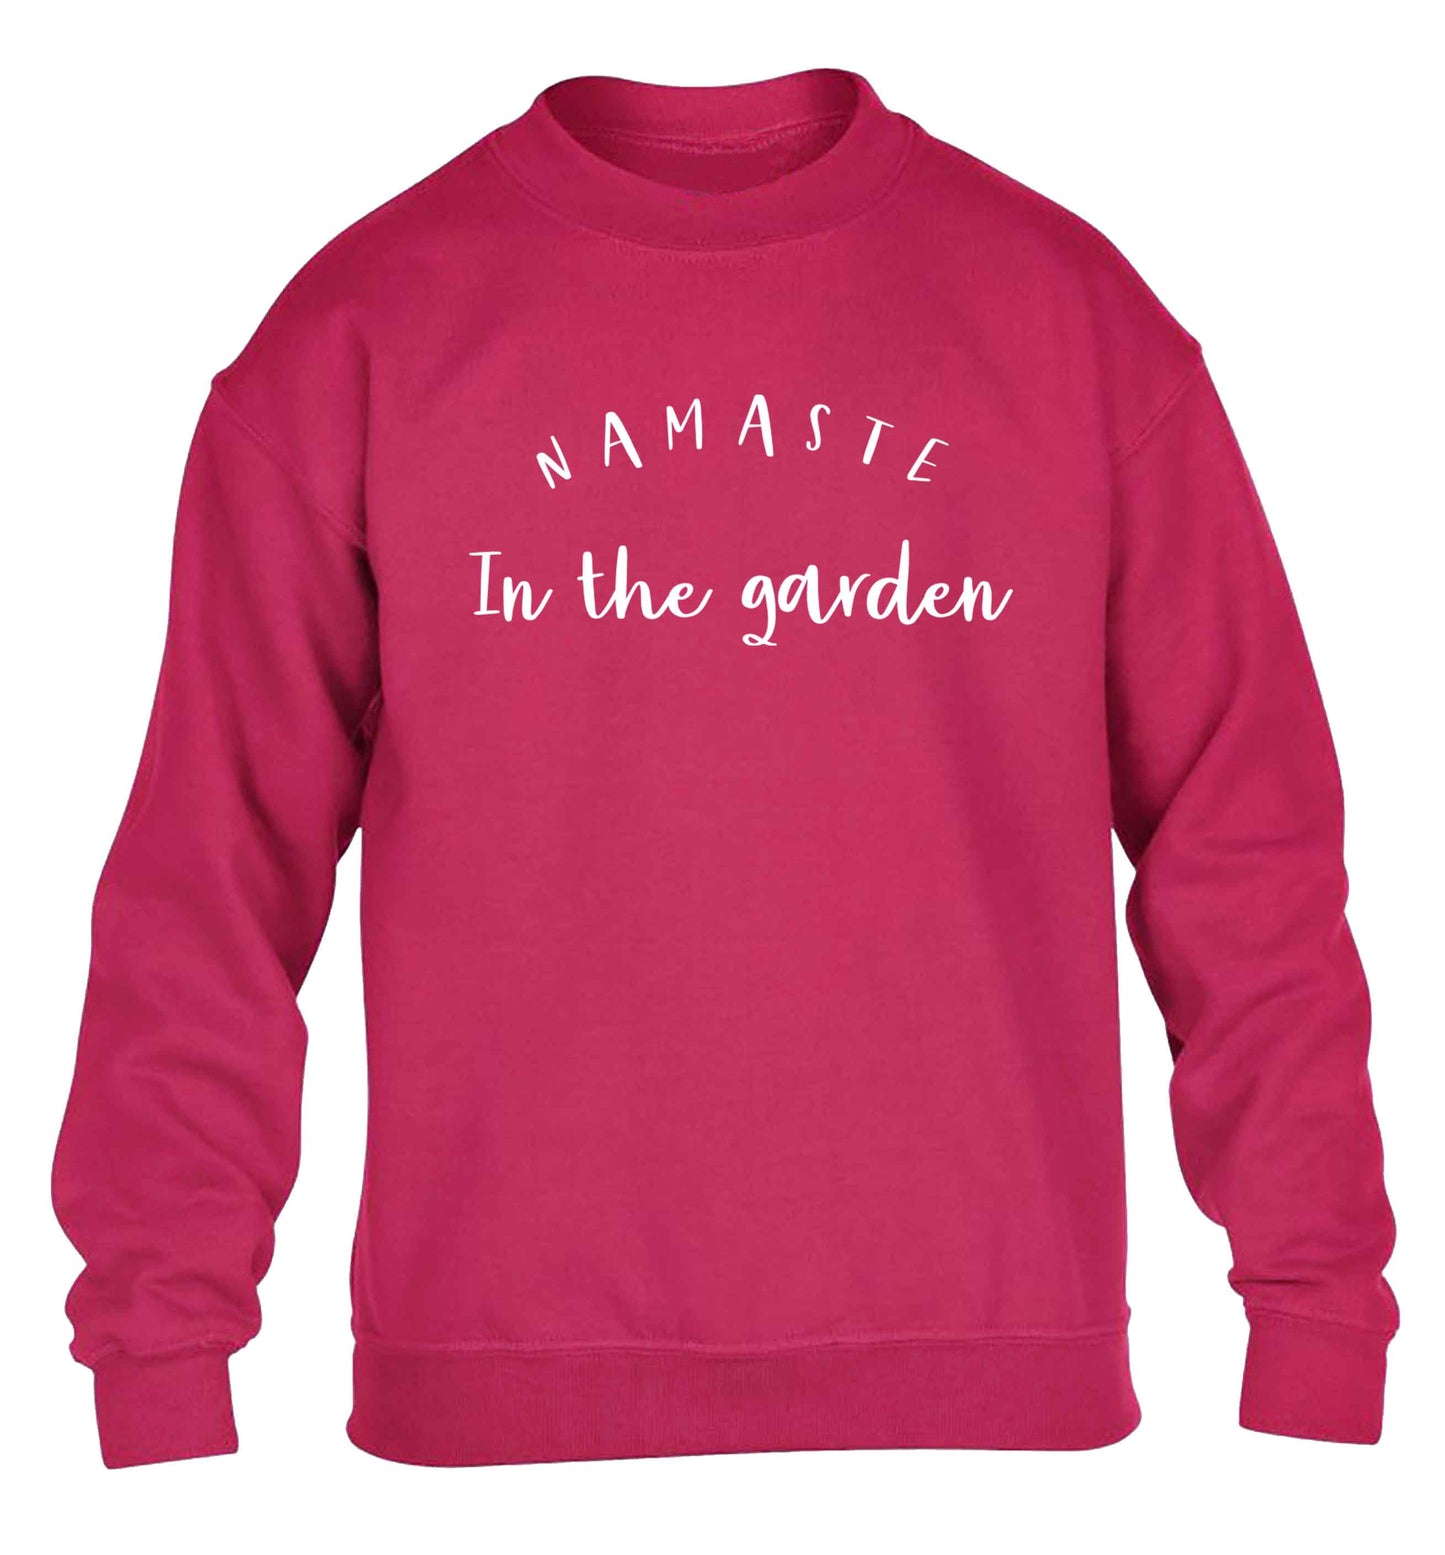 Namaste in the garden children's pink sweater 12-13 Years